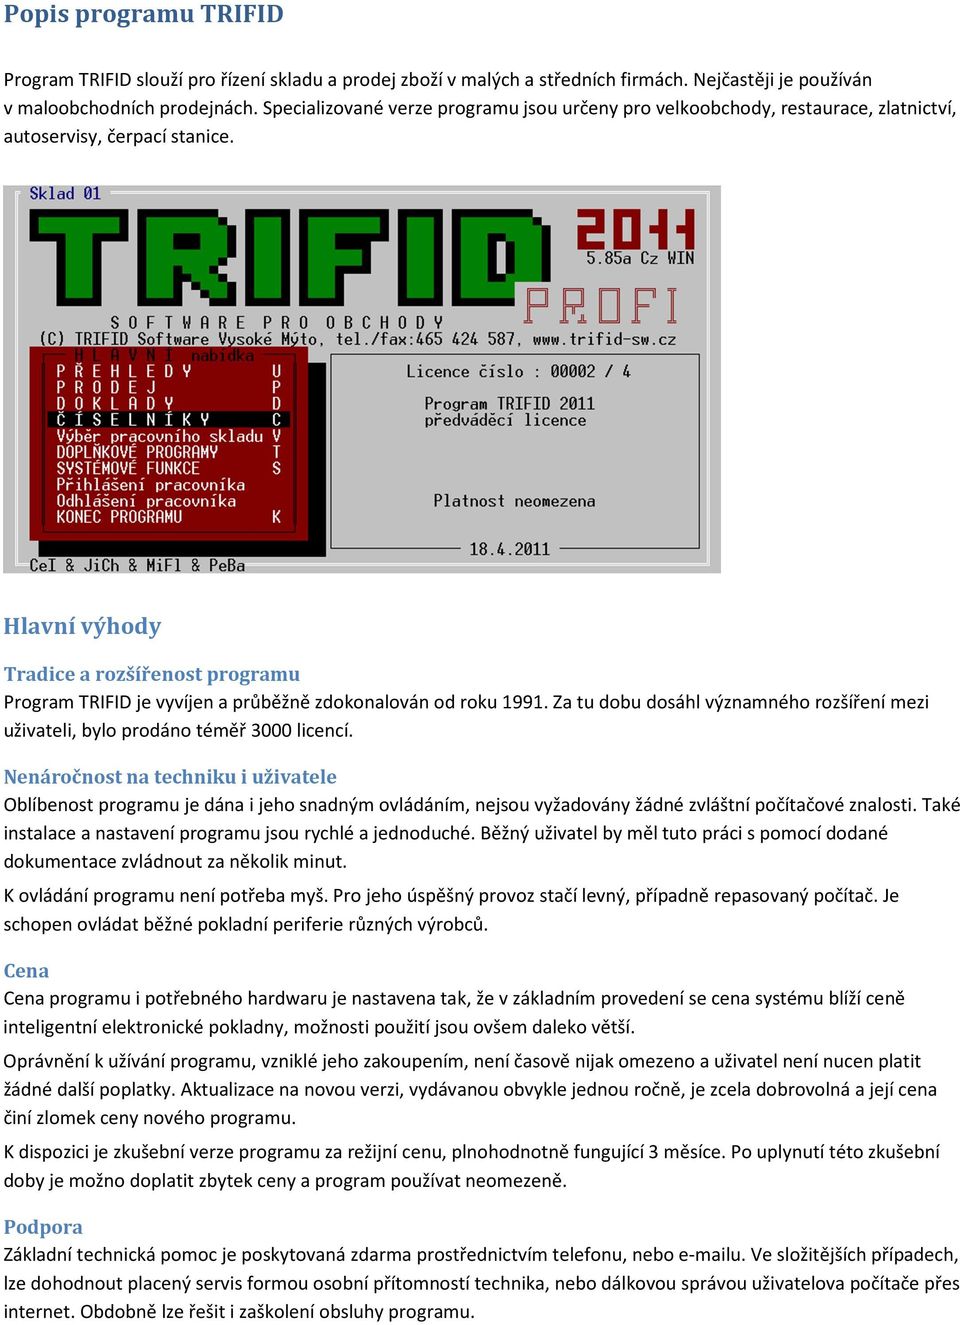 Hlavní výhody Tradice a rozšířenost programu Program TRIFID je vyvíjen a průběžně zdokonalován od roku 1991. Za tu dobu dosáhl významného rozšíření mezi uživateli, bylo prodáno téměř 3000 licencí.